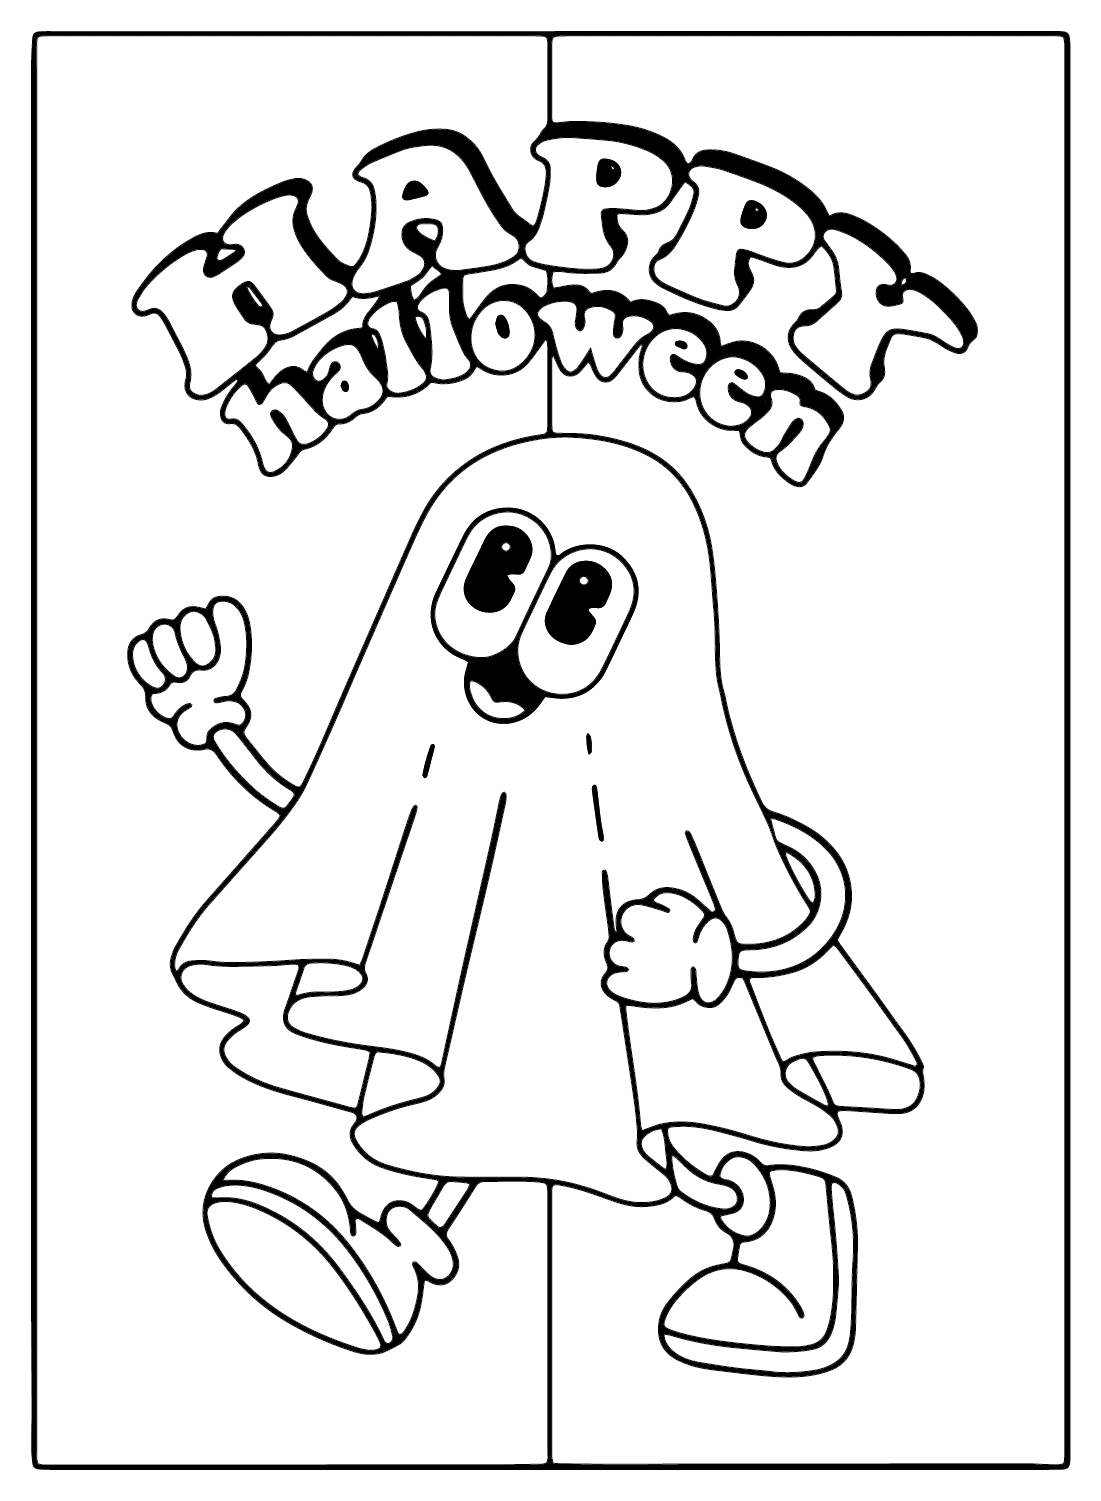 Página para colorear de Tarjetas de Halloween para imprimir gratis de Tarjetas de Halloween